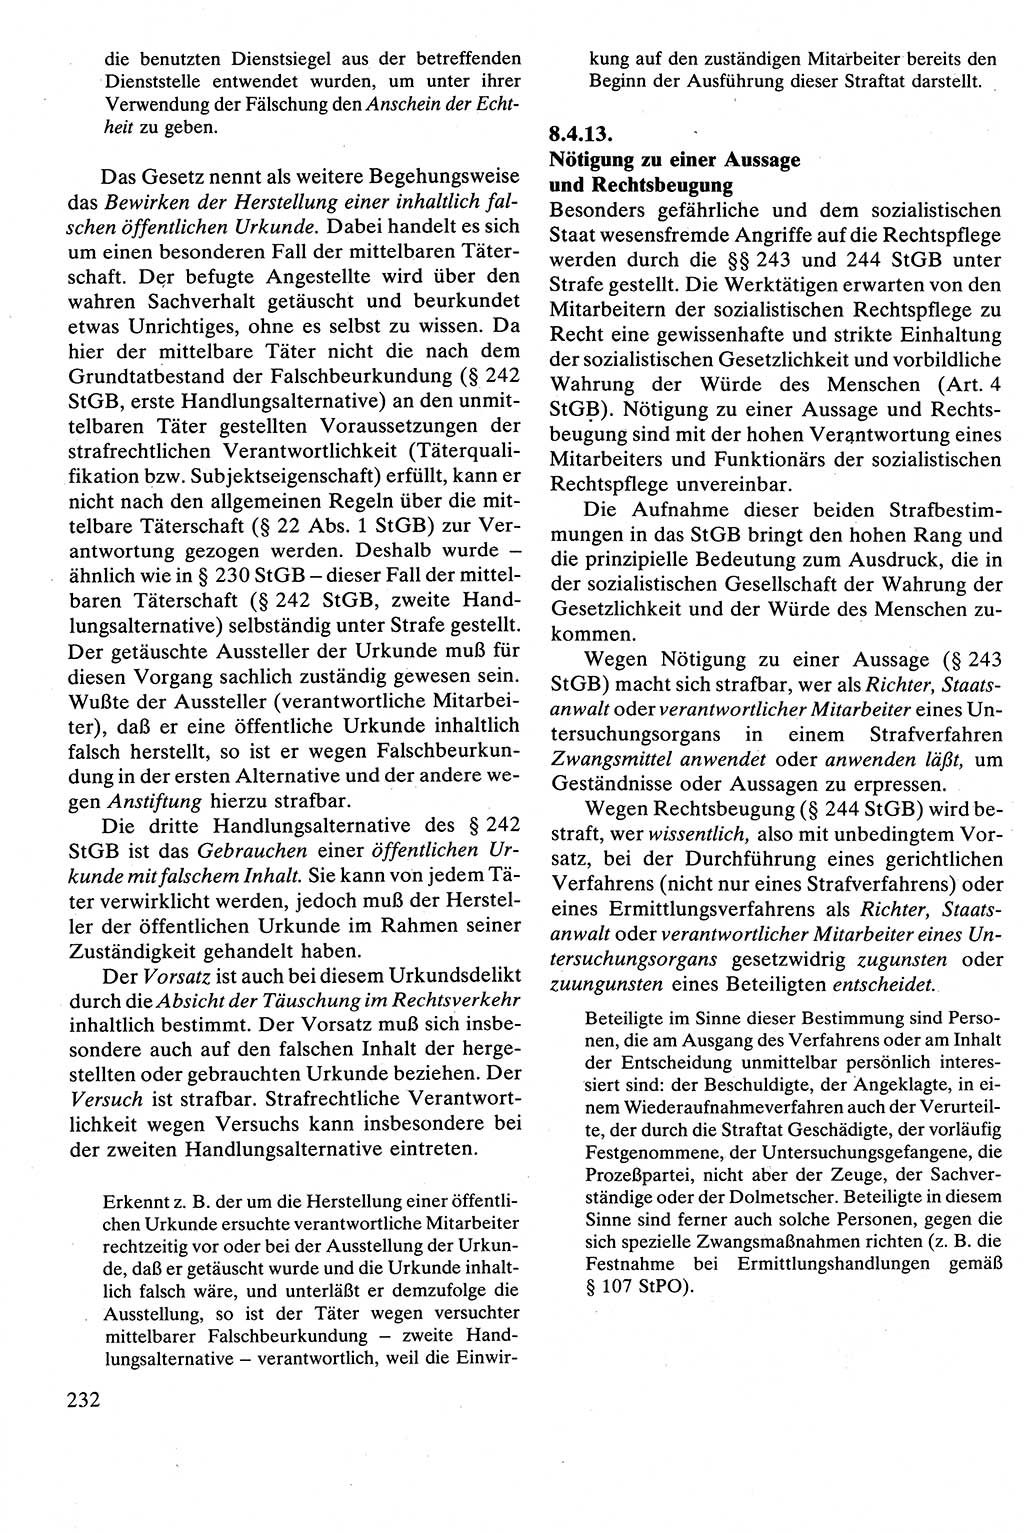 Strafrecht [Deutsche Demokratische Republik (DDR)], Besonderer Teil, Lehrbuch 1981, Seite 232 (Strafr. DDR BT Lb. 1981, S. 232)